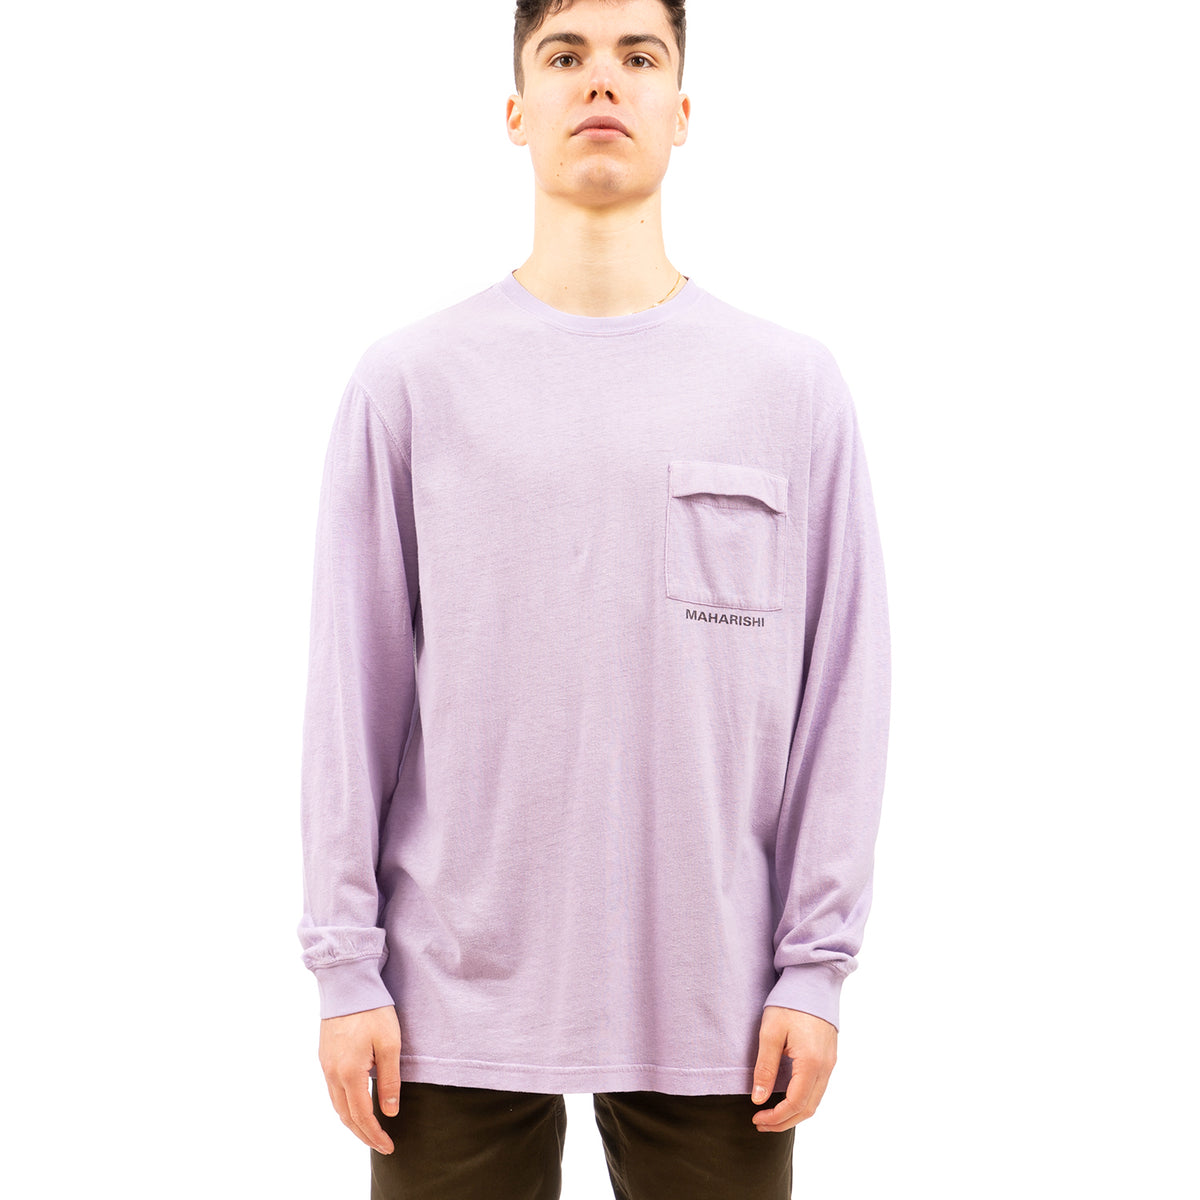 maharishi | 7007 Hemp L/S T-shirt HOCJ 200 Lavender - Concrete